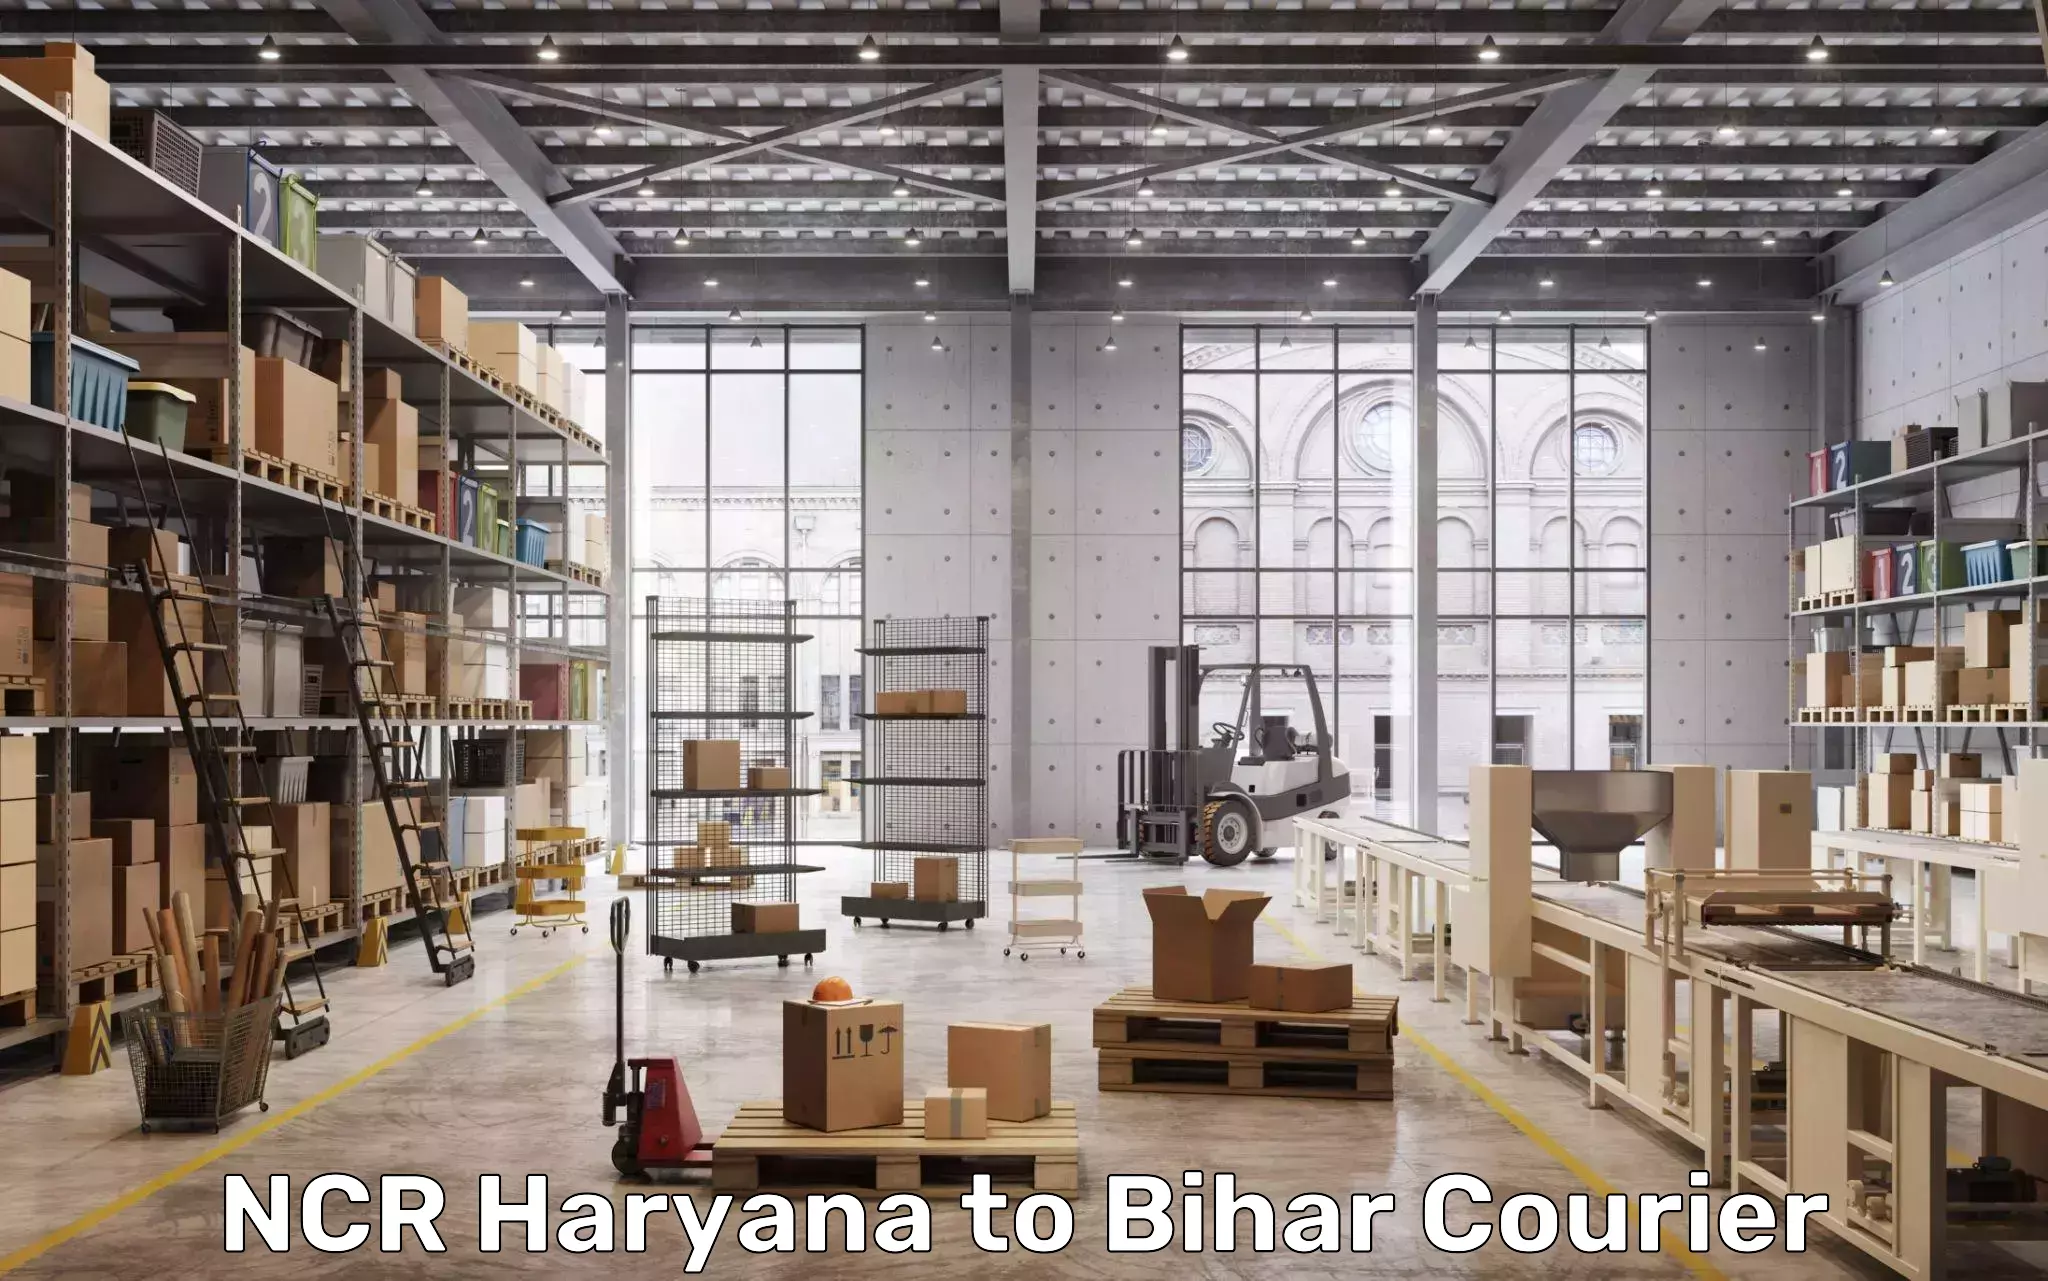 Light baggage courier NCR Haryana to Piro